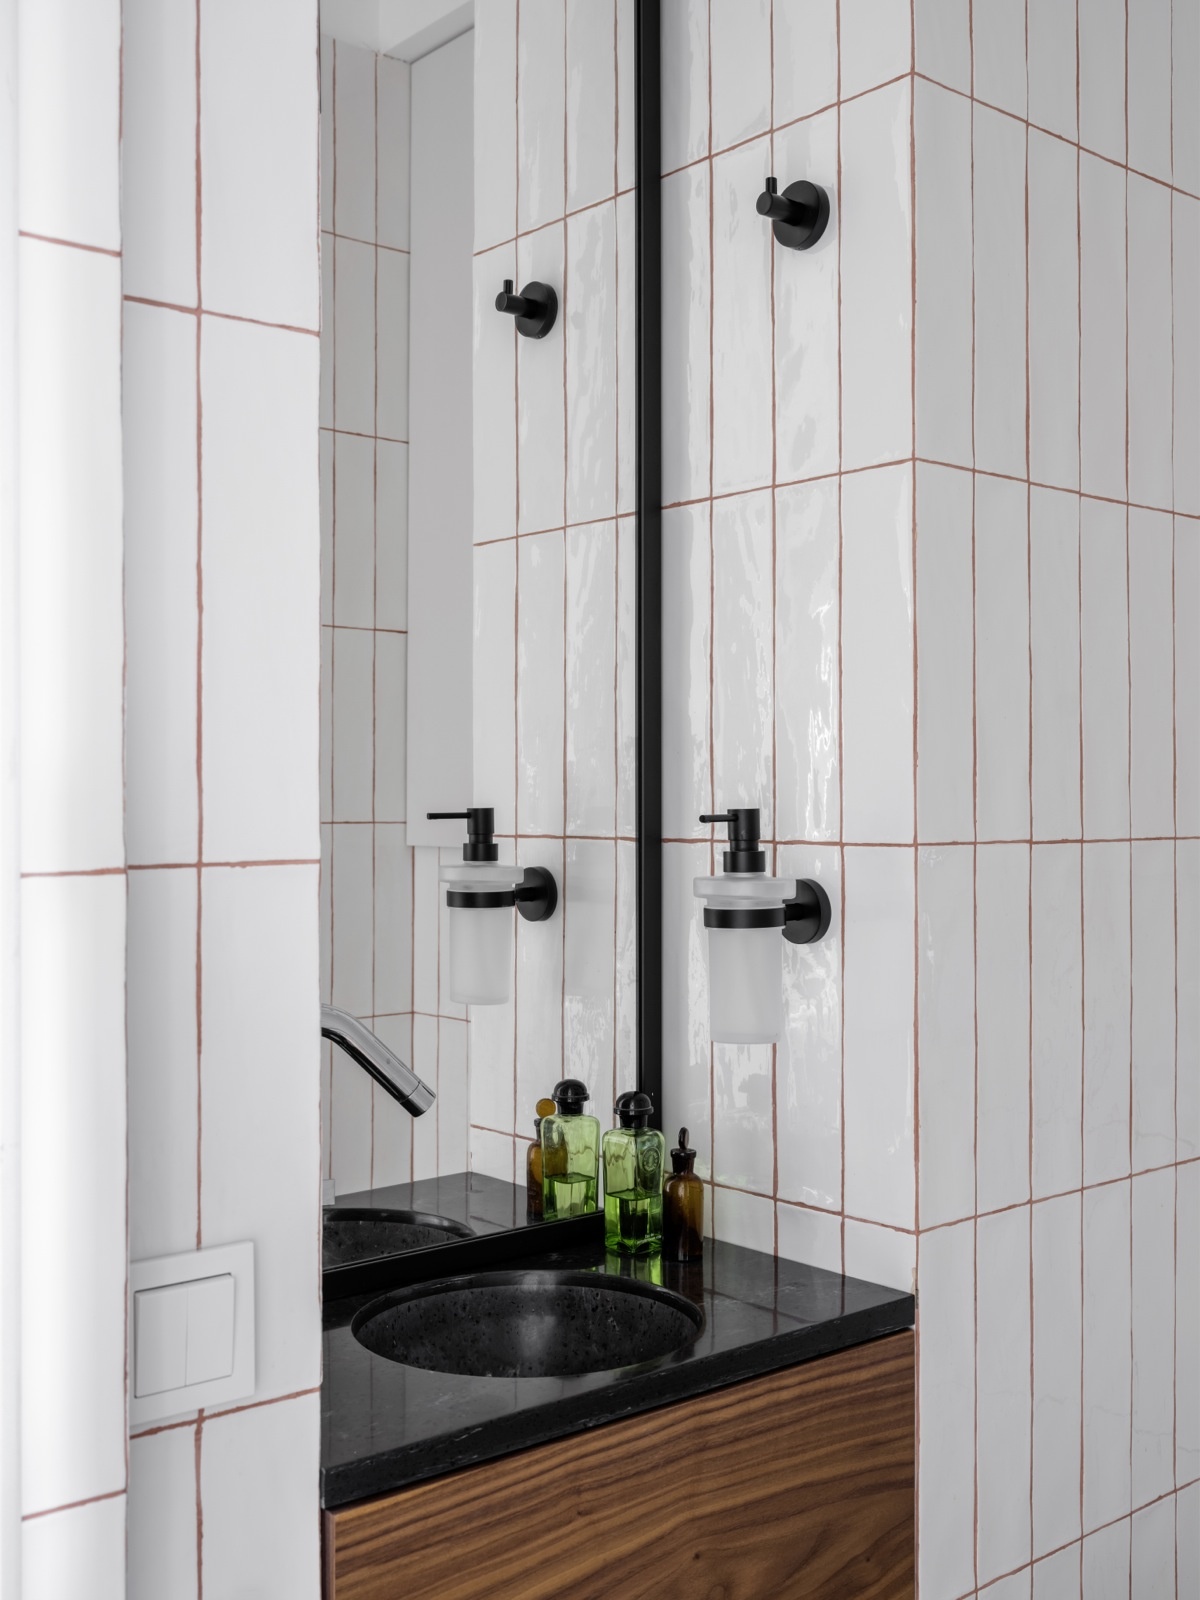 Phòng tắm nhỏ hẹp sử dụng gạch thẻ màu trắng ốp dọc tường để 'kéo cao' trần, với các đường kẽ gạch màu đỏ làm điểm nhấn. Nội thất màu đen cũng nhấn nhá chút sắc màu tương phản cho không gian.